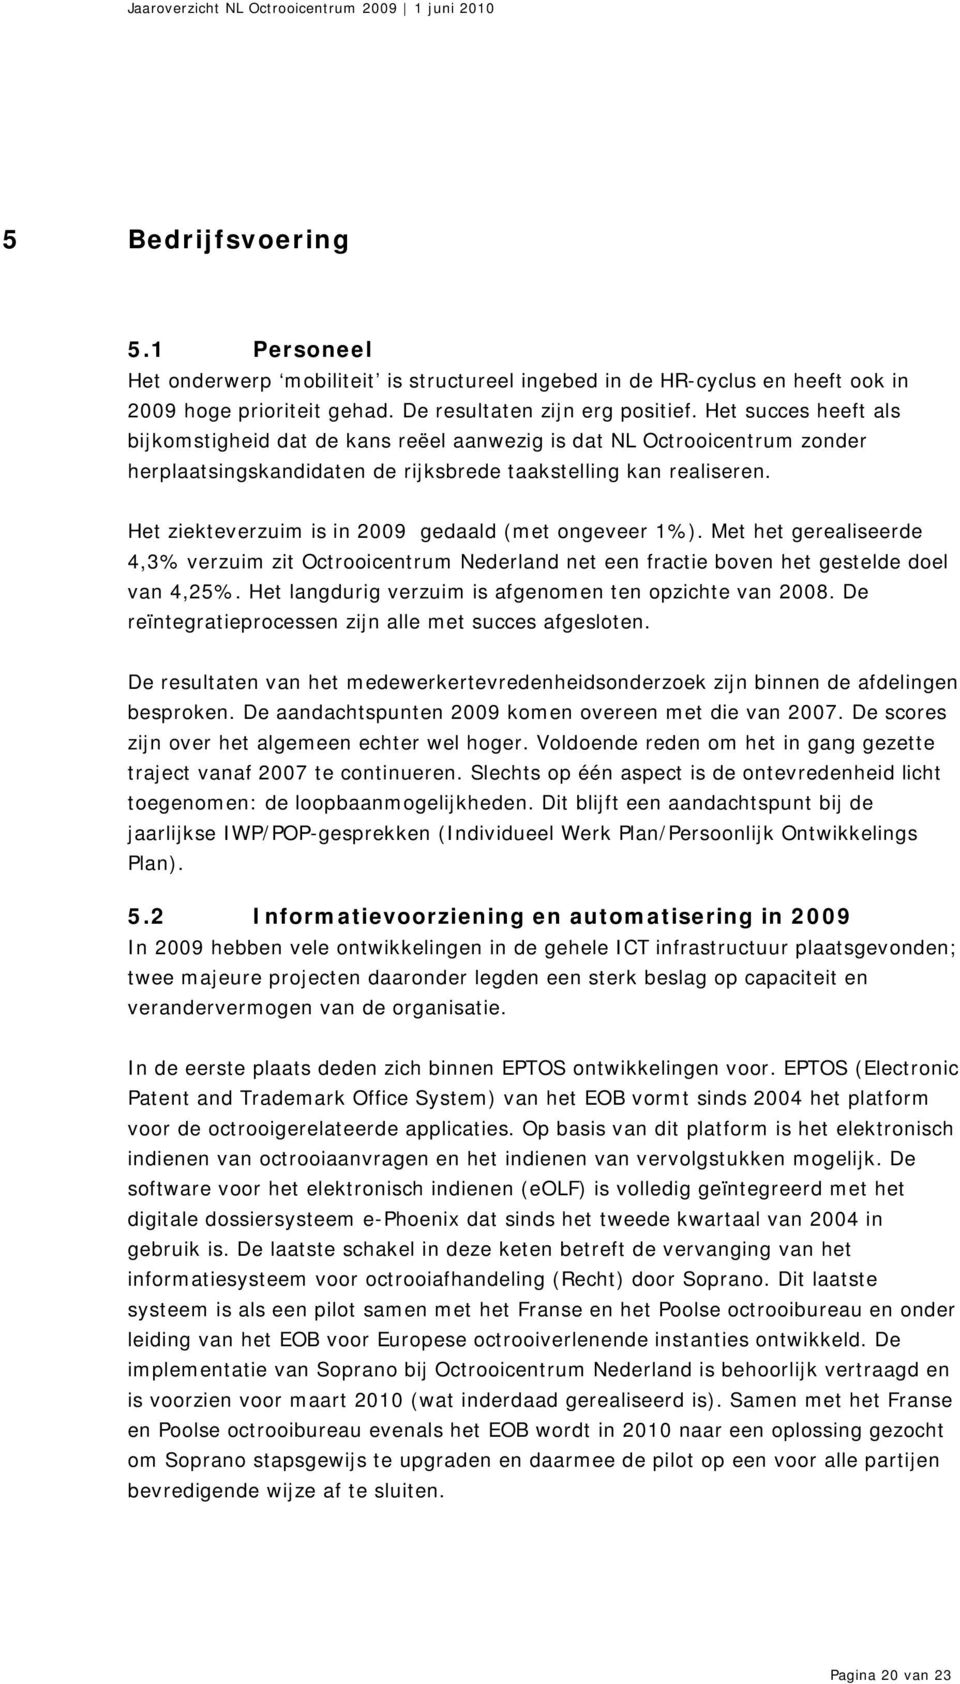 Het ziekteverzuim is in 2009 gedaald (met ongeveer 1%). Met het gerealiseerde 4,3% verzuim zit Octrooicentrum Nederland net een fractie boven het gestelde doel van 4,25%.